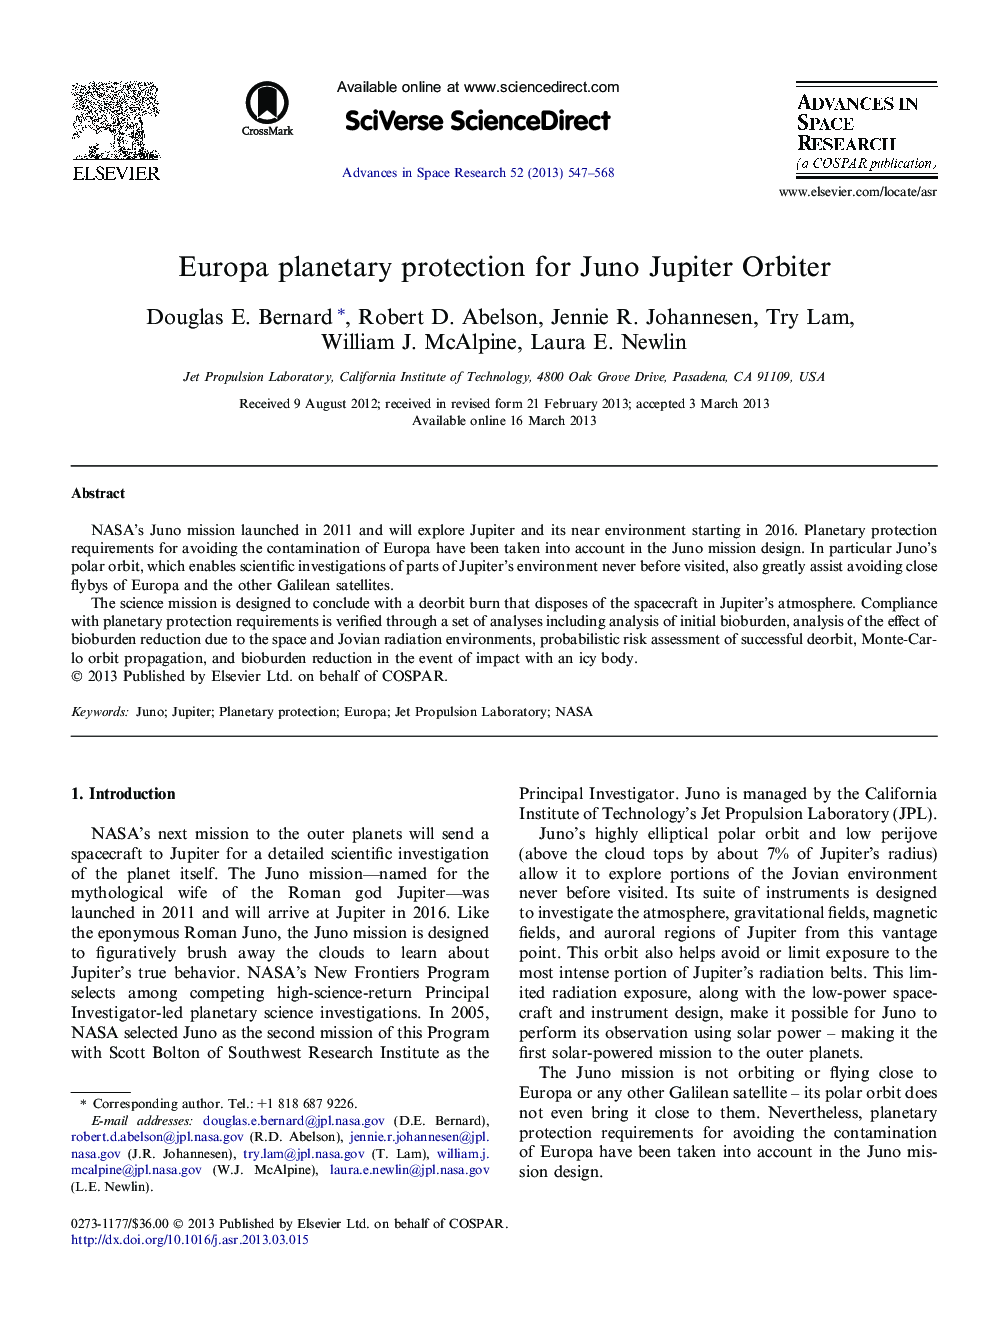 Europa planetary protection for Juno Jupiter Orbiter